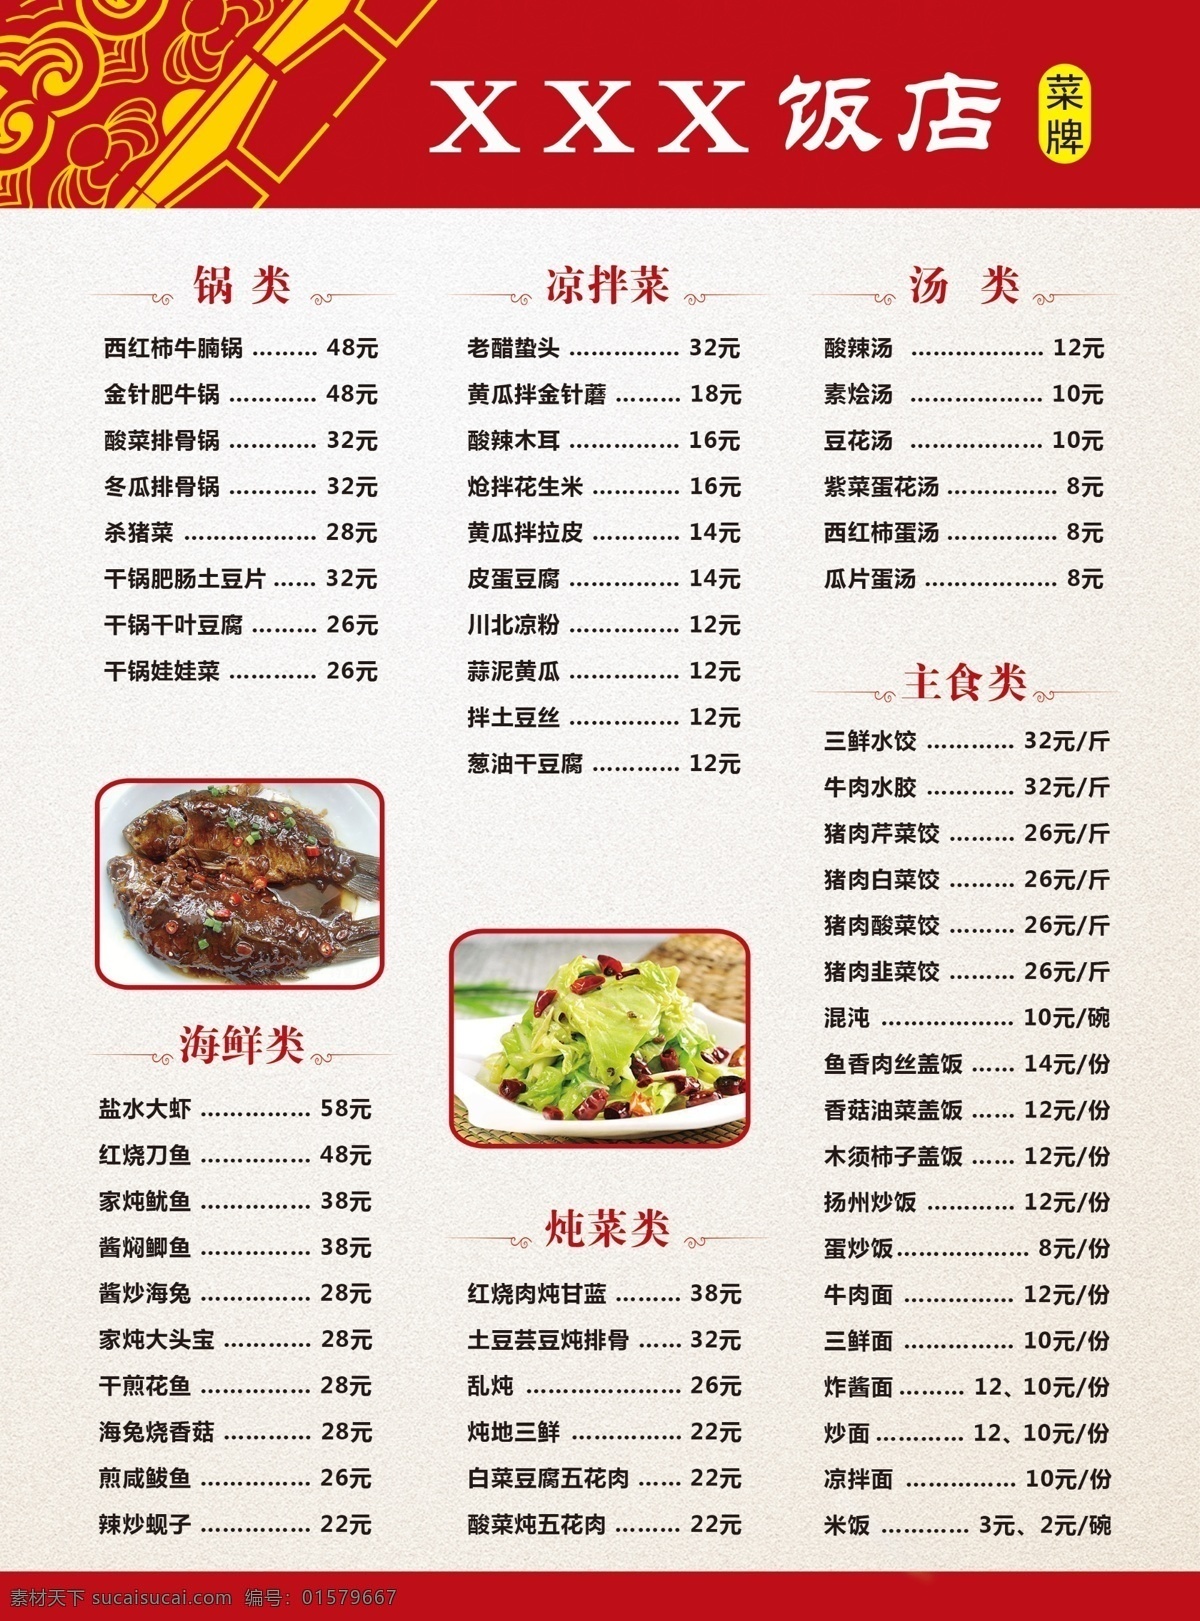 菜单 锅内凉拌菜 汤类 主食类 海鲜类 炖菜类 价格 菜品名